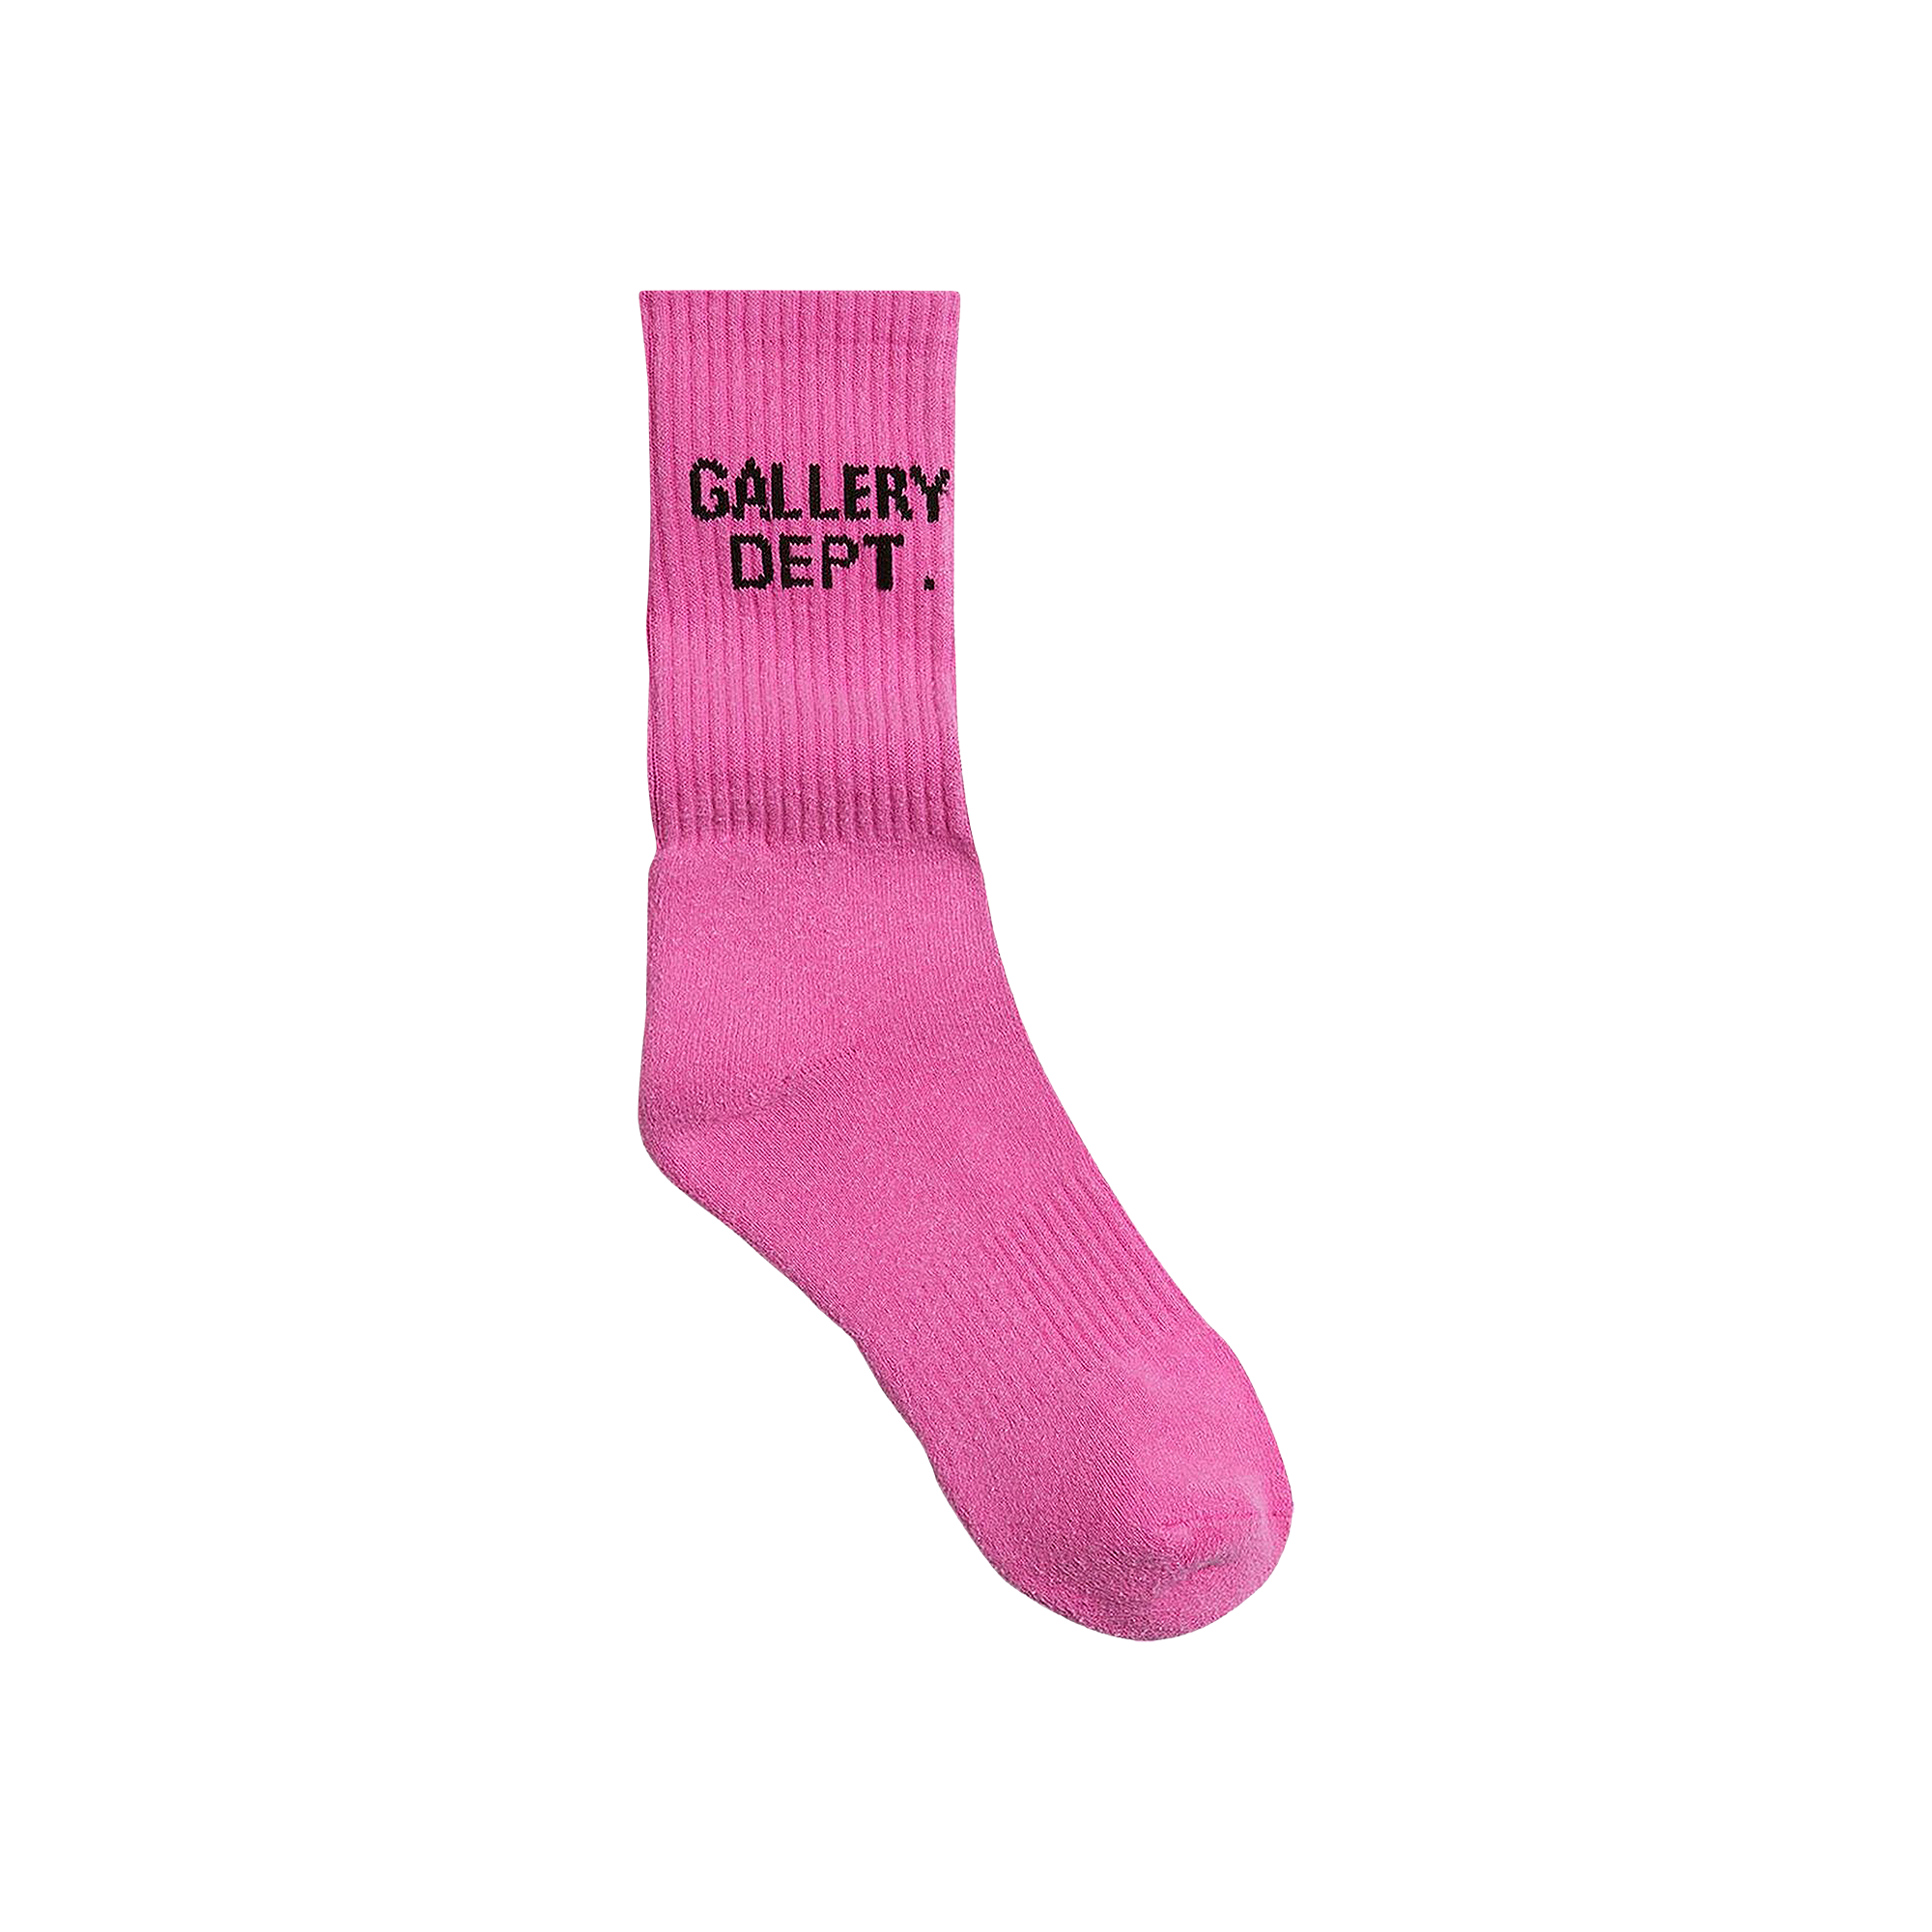 Pre-owned Gallery Dept. Clean Socks 'flo Pink'